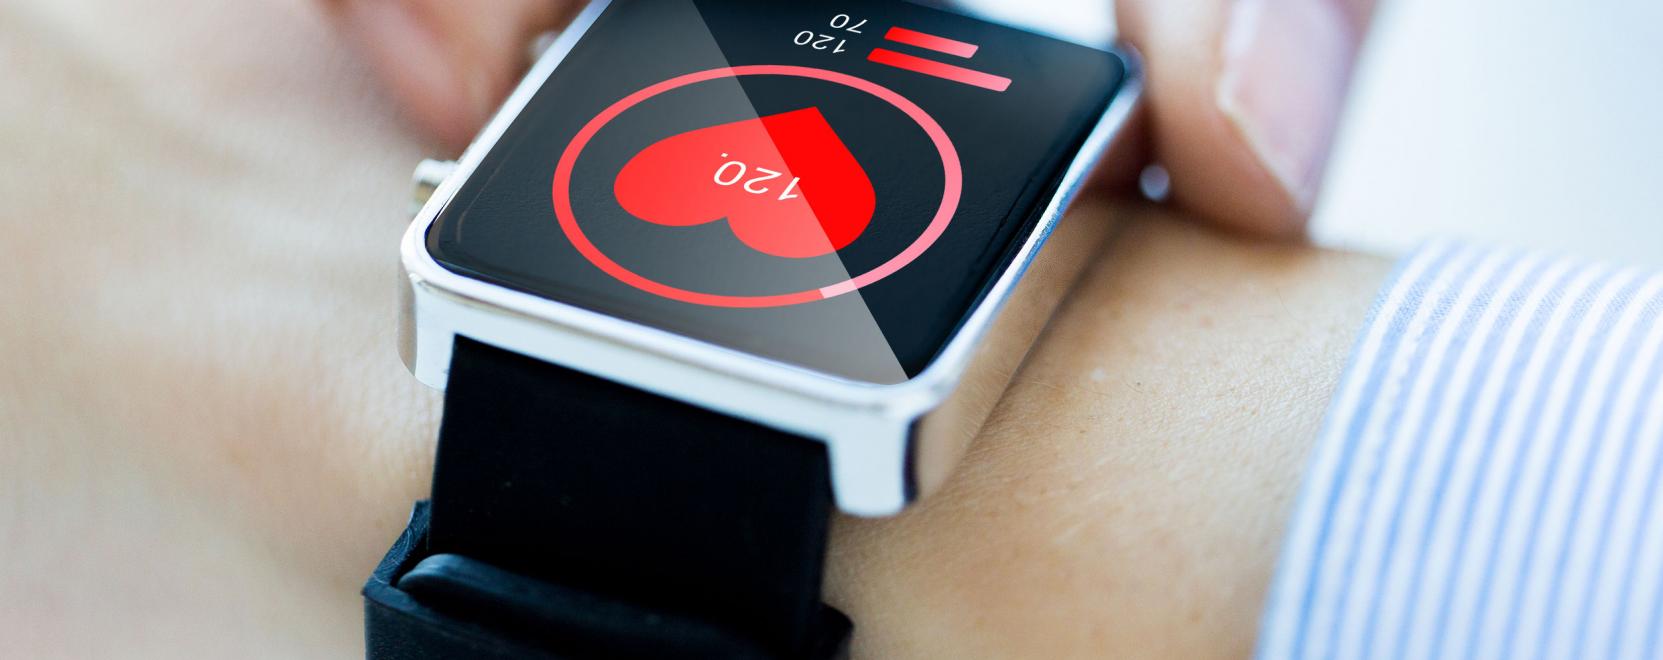 A szívbetegség korai jeleit is detektálhatja az Apple Watch